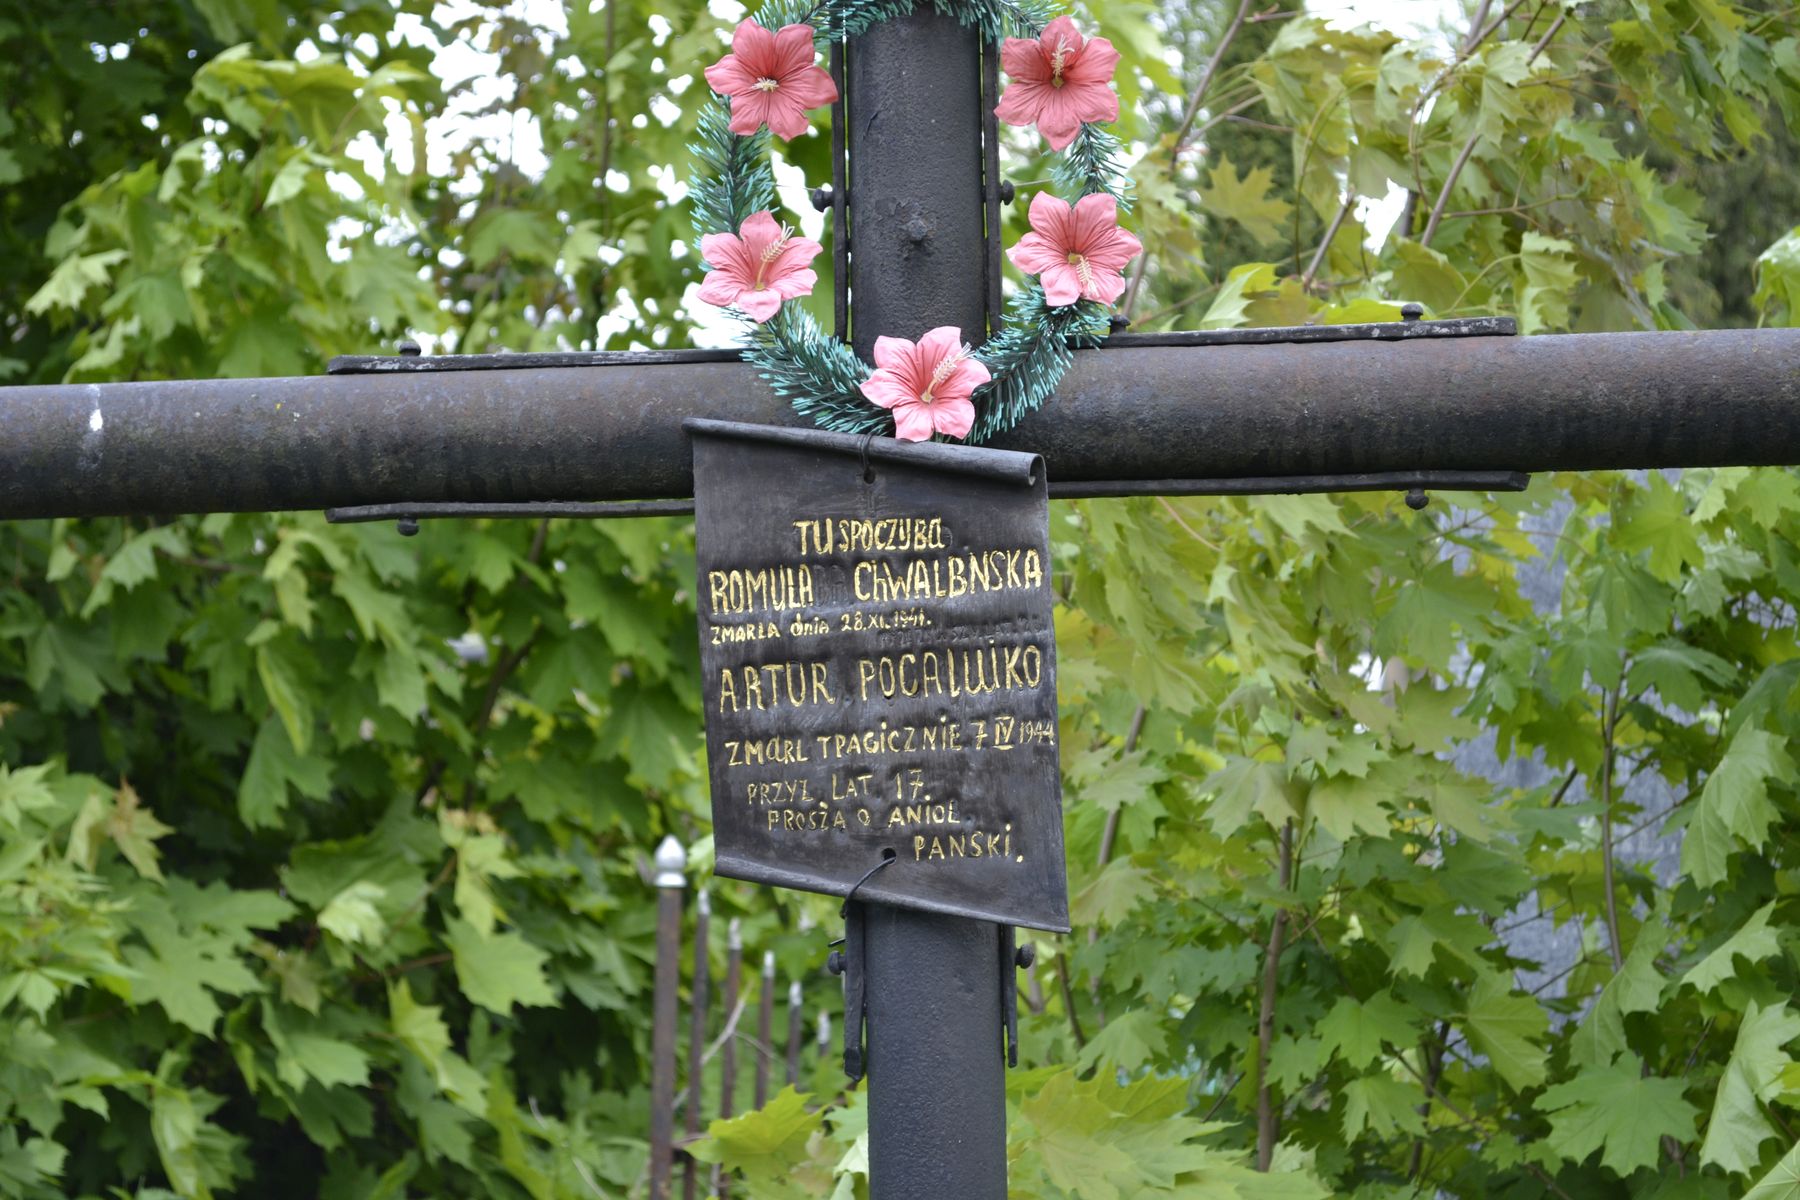 Inskrypcja na nagrobku Romuli Chwalbnskiej i Artura Pocaluko, cmentarz w Tarnopolu, stan z 2016